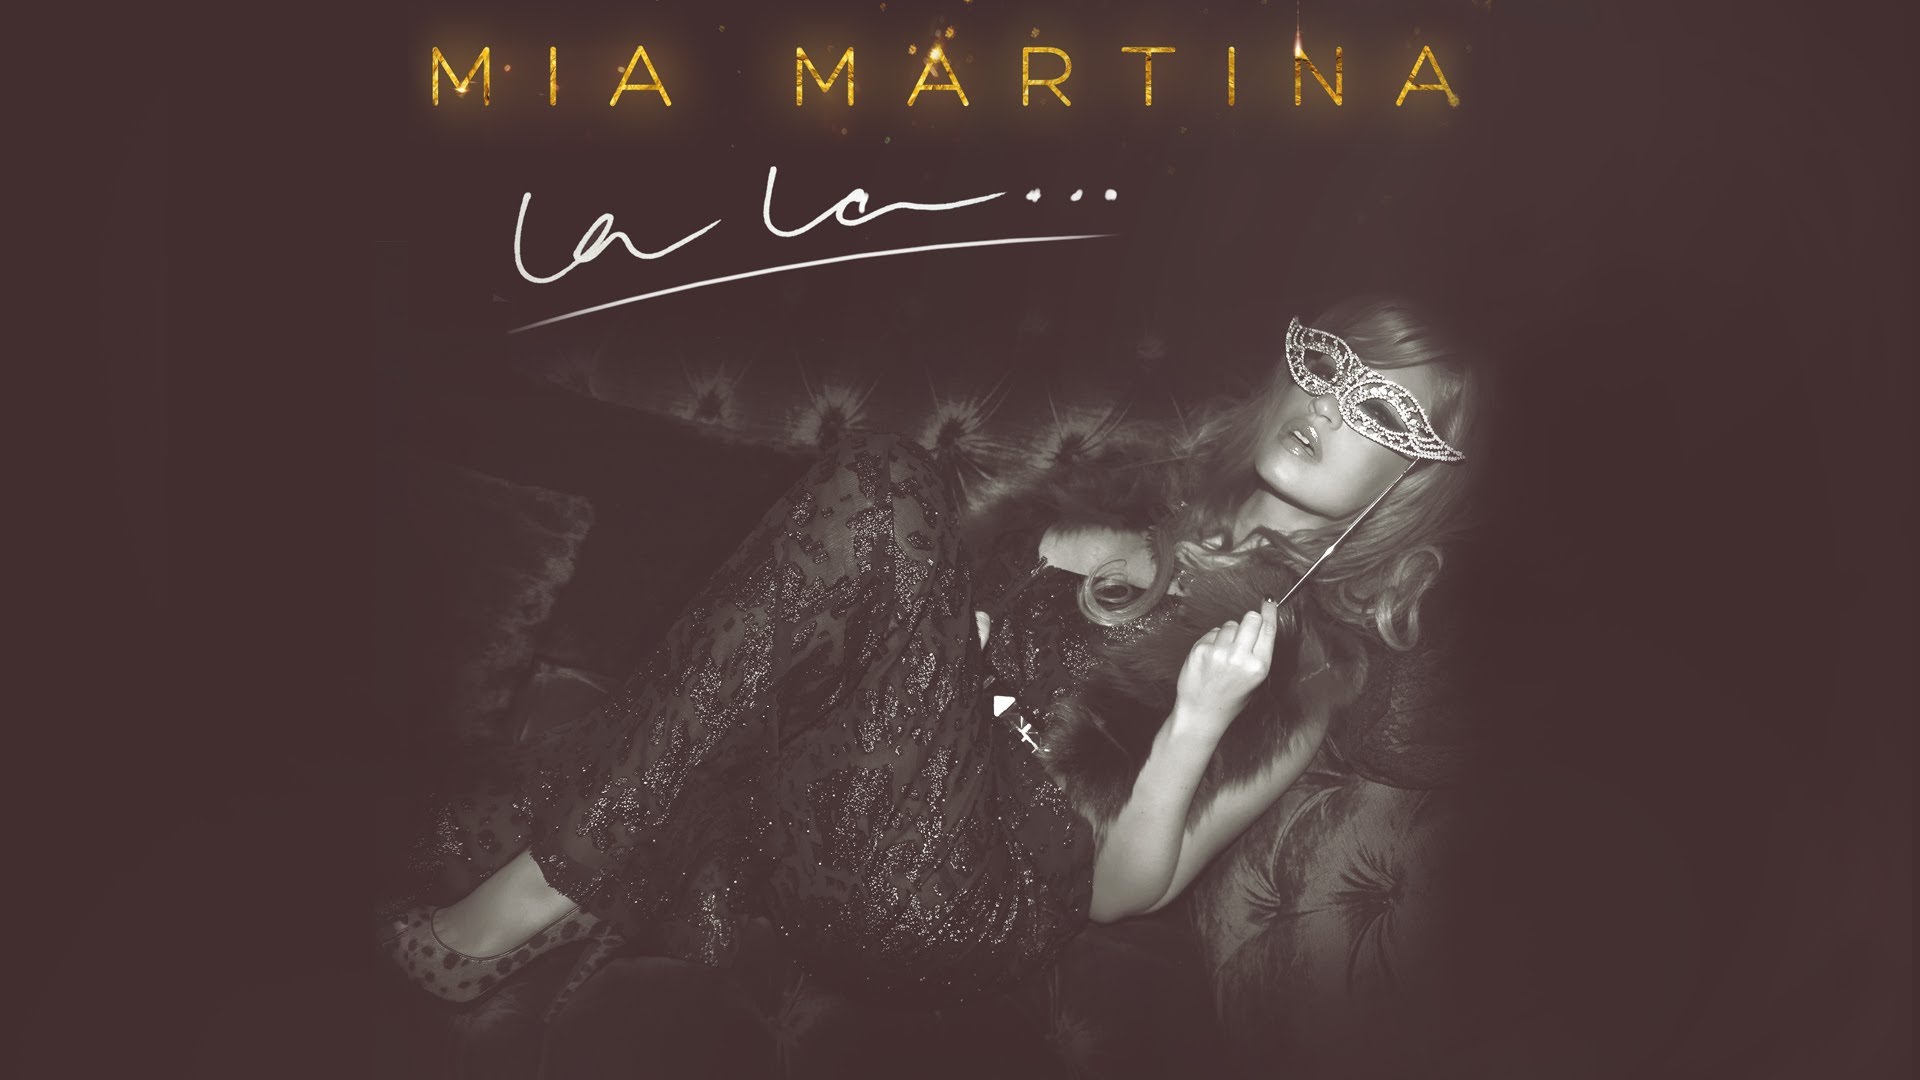 Mia Martina - La La...